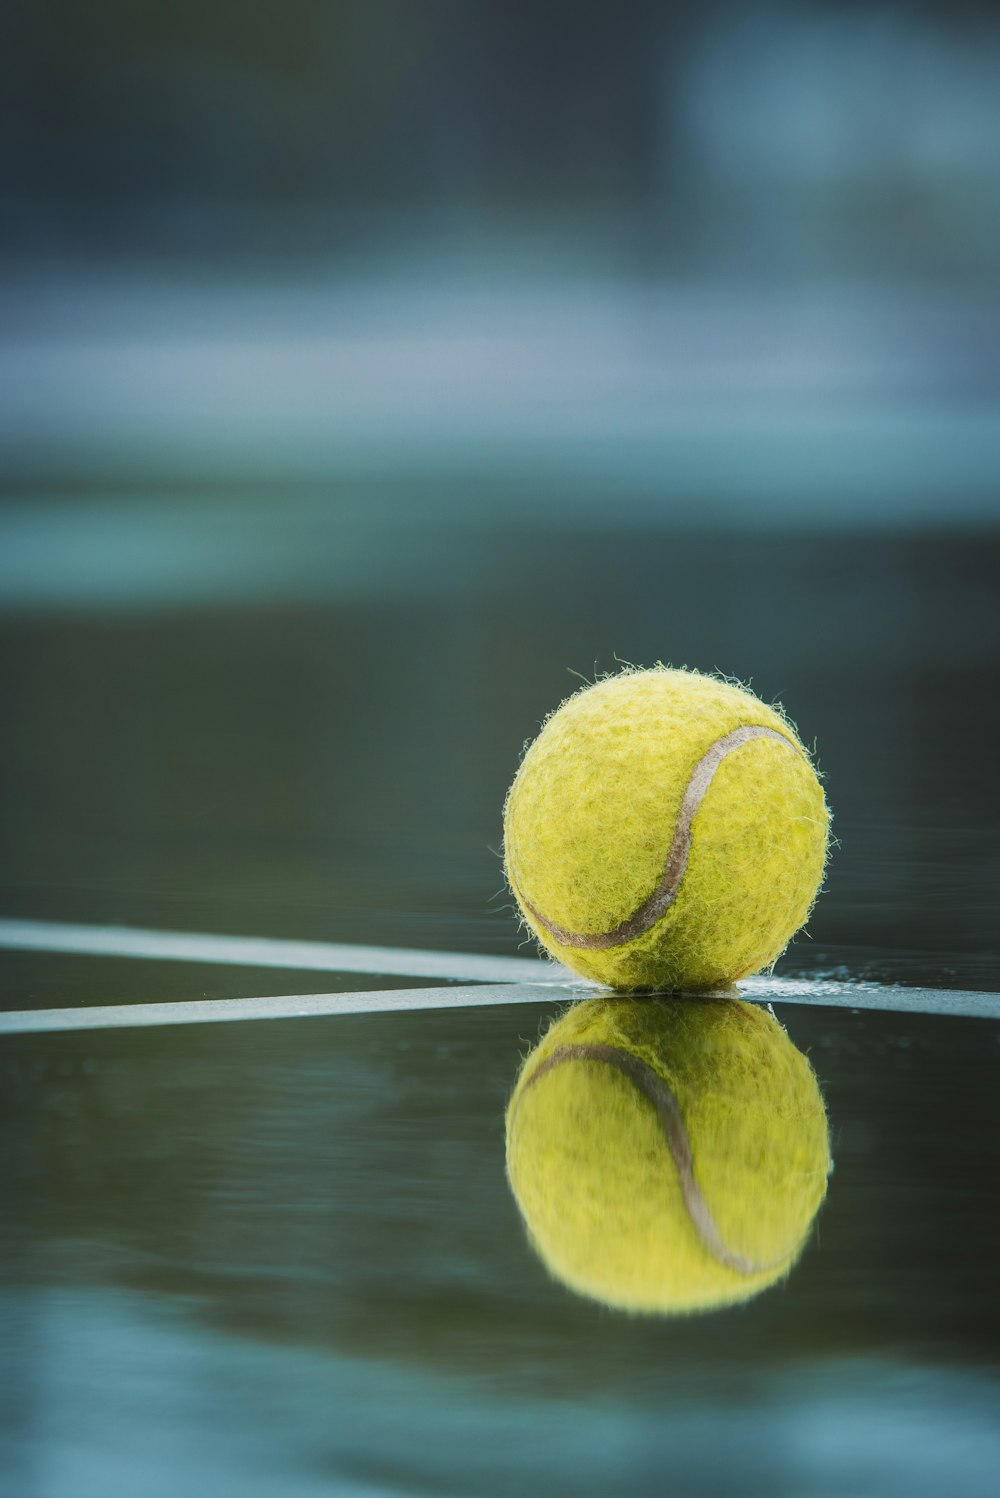 Una pelota de tenis sentada encima de una cancha de tenis